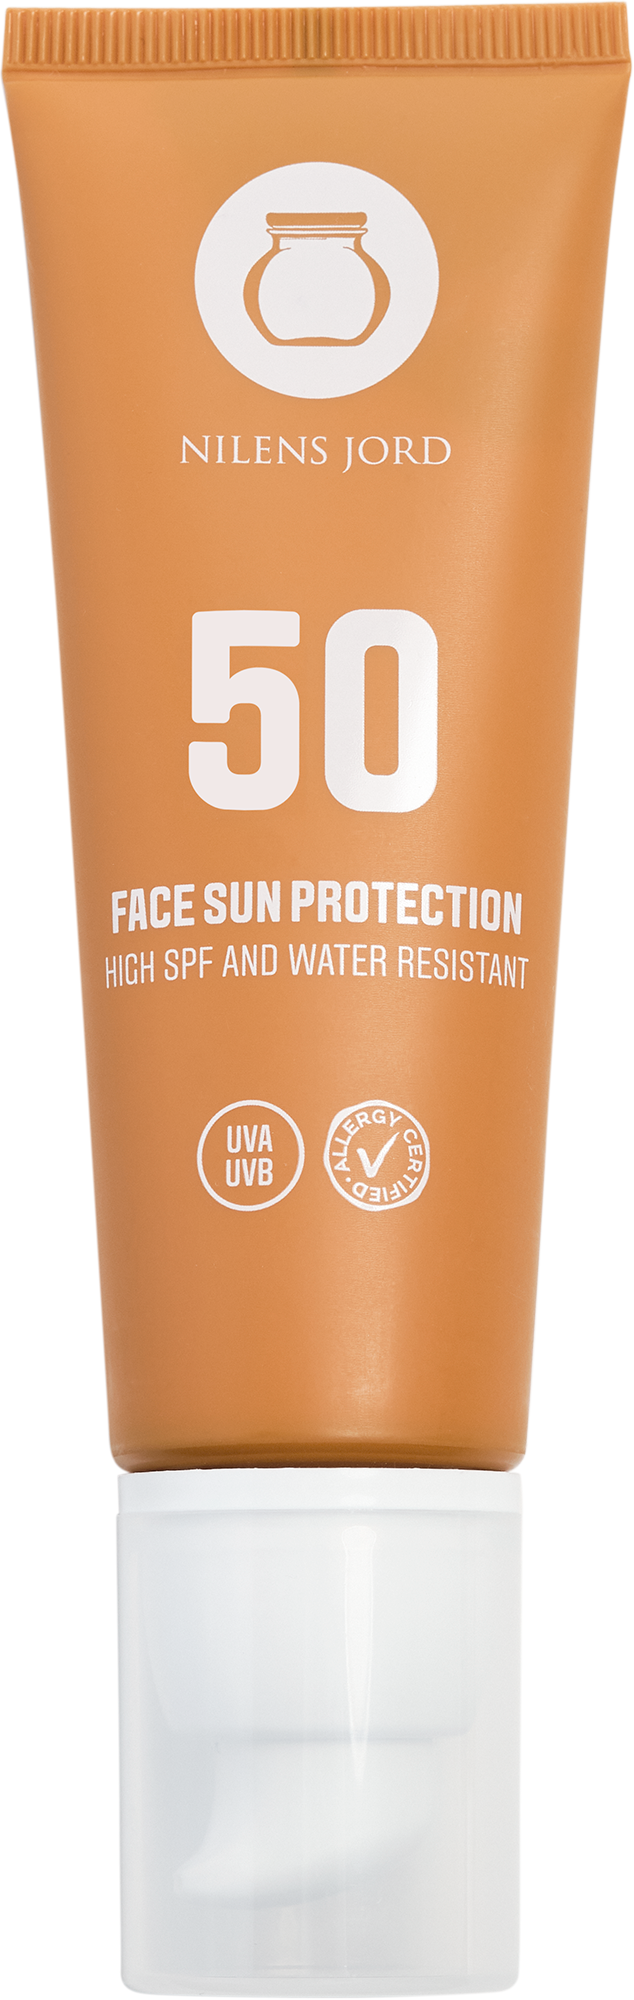 Billede af Nilens Jord Face Sun Protection SPF 50 50 ml. hos Well.dk